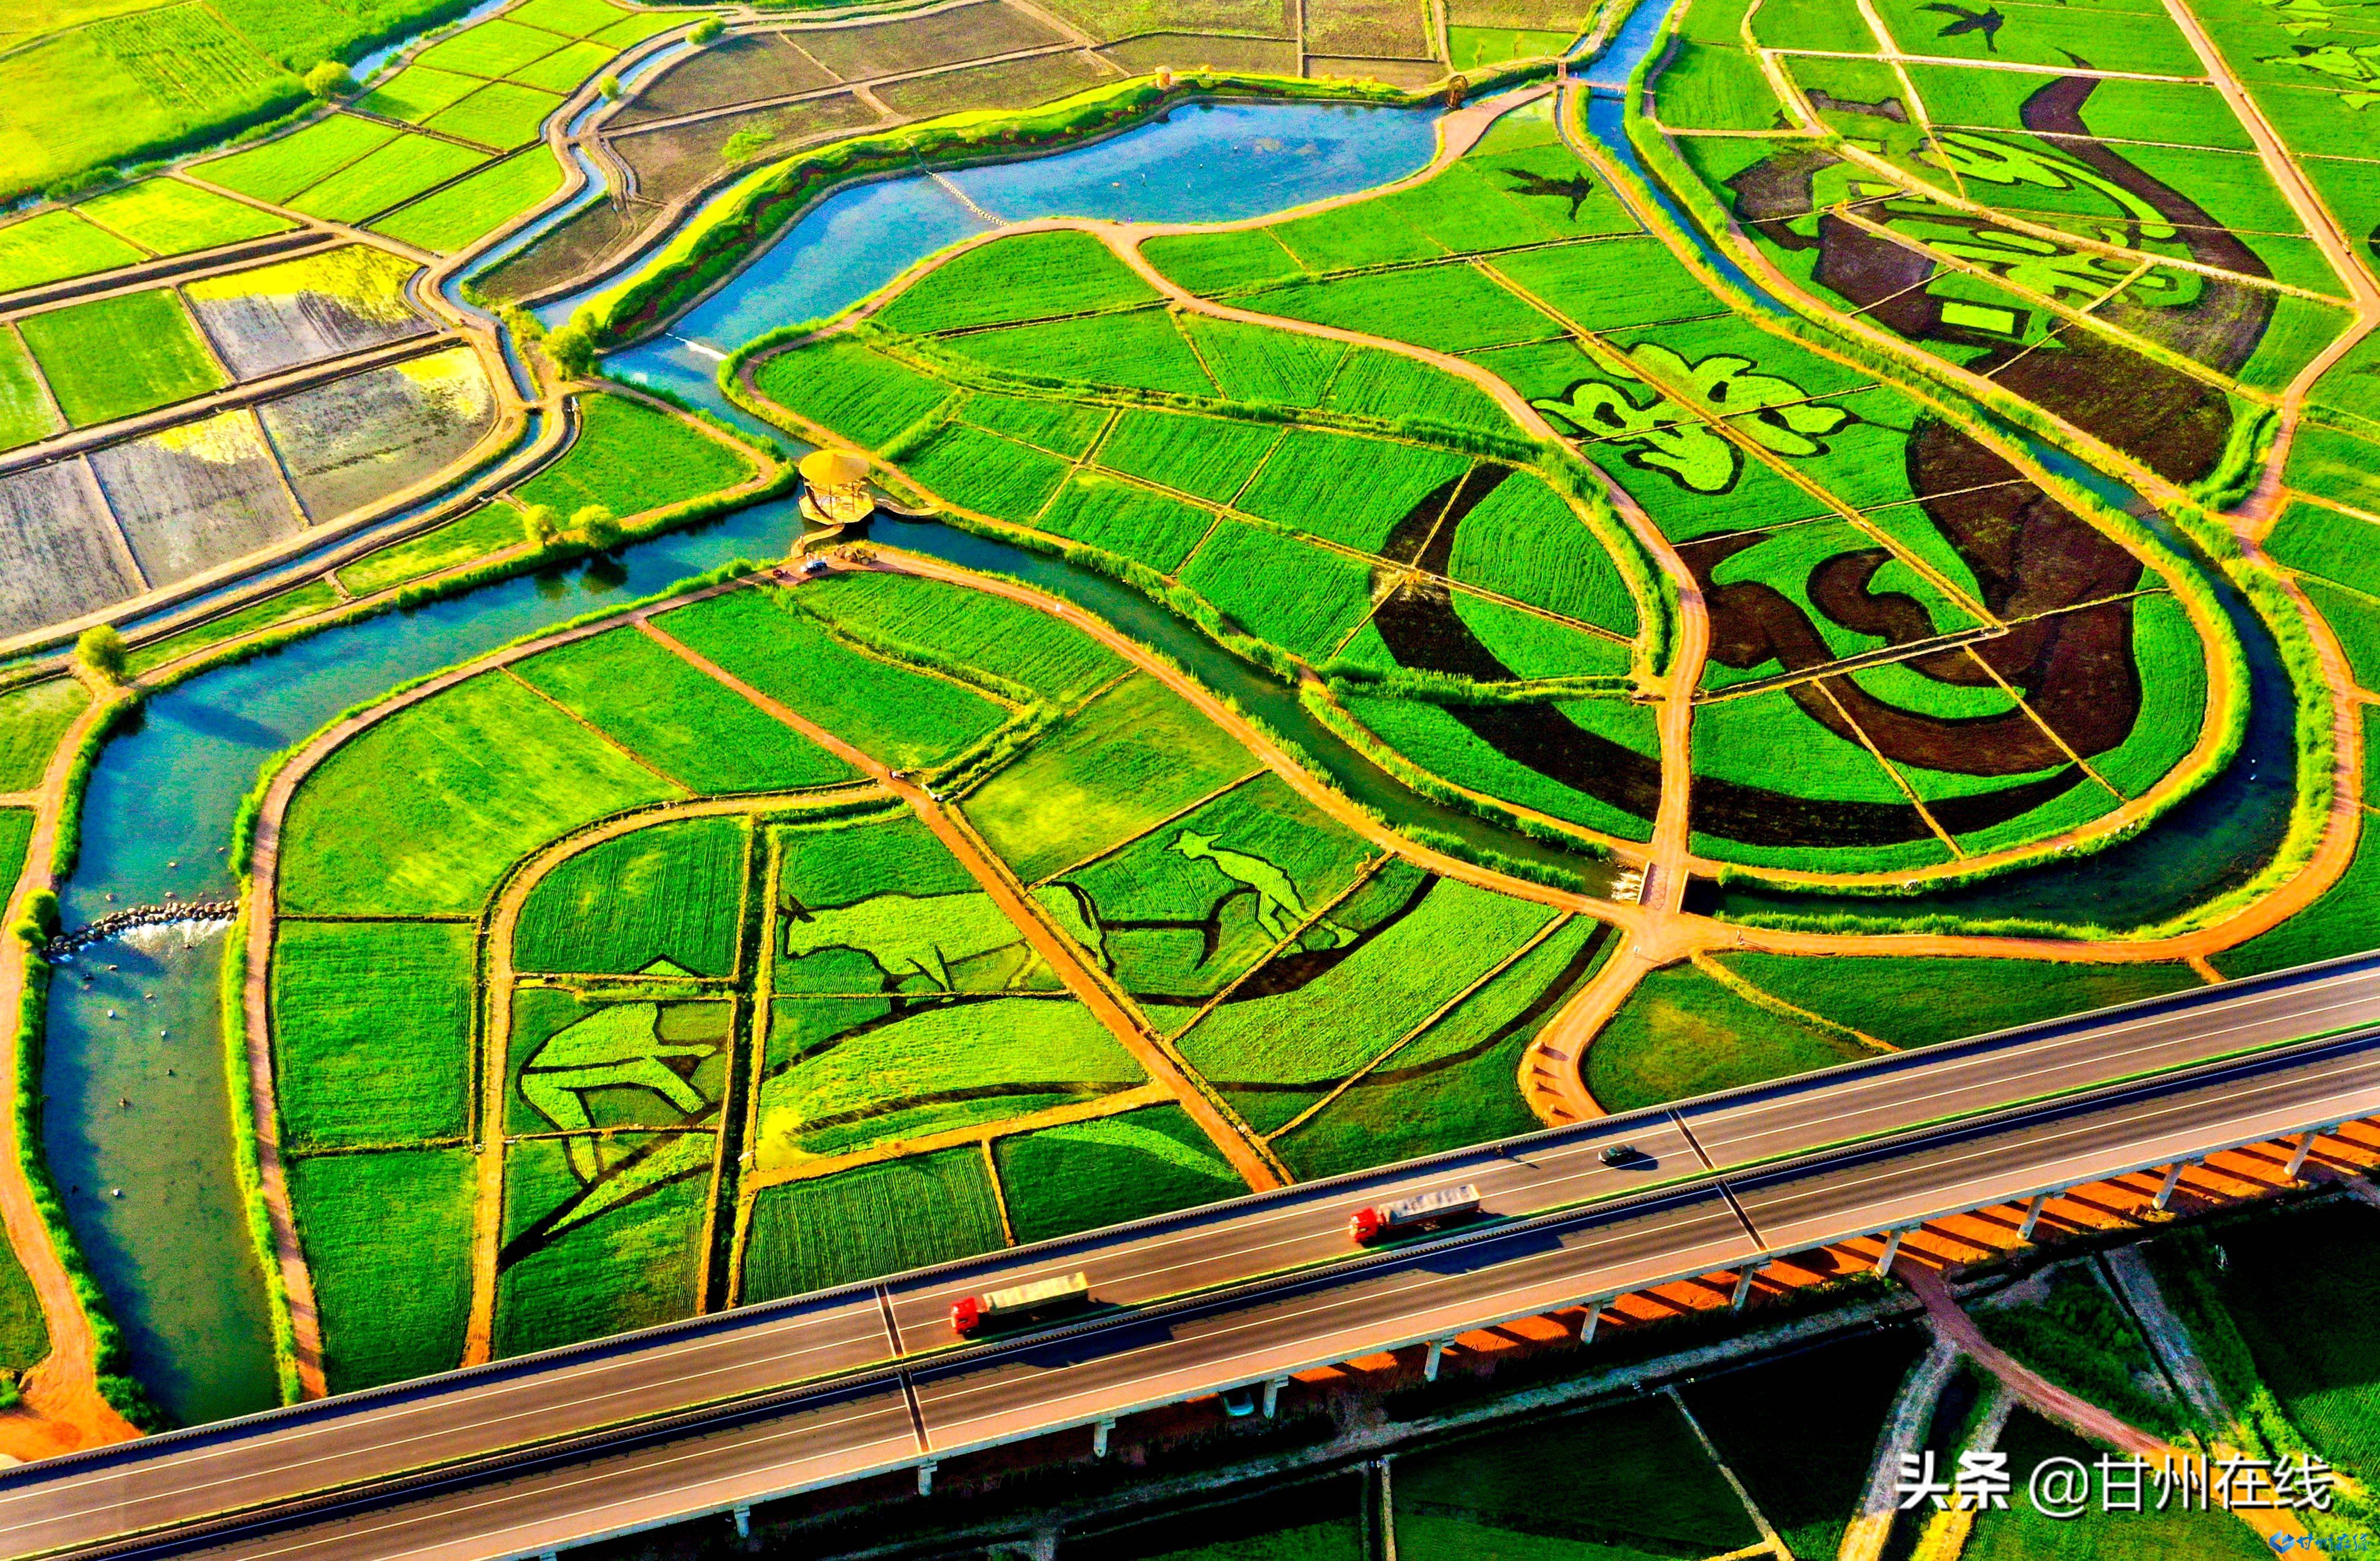 沿两条廊道形成稻田画艺术创作区,打造甘州城北的田园大地景观网红地